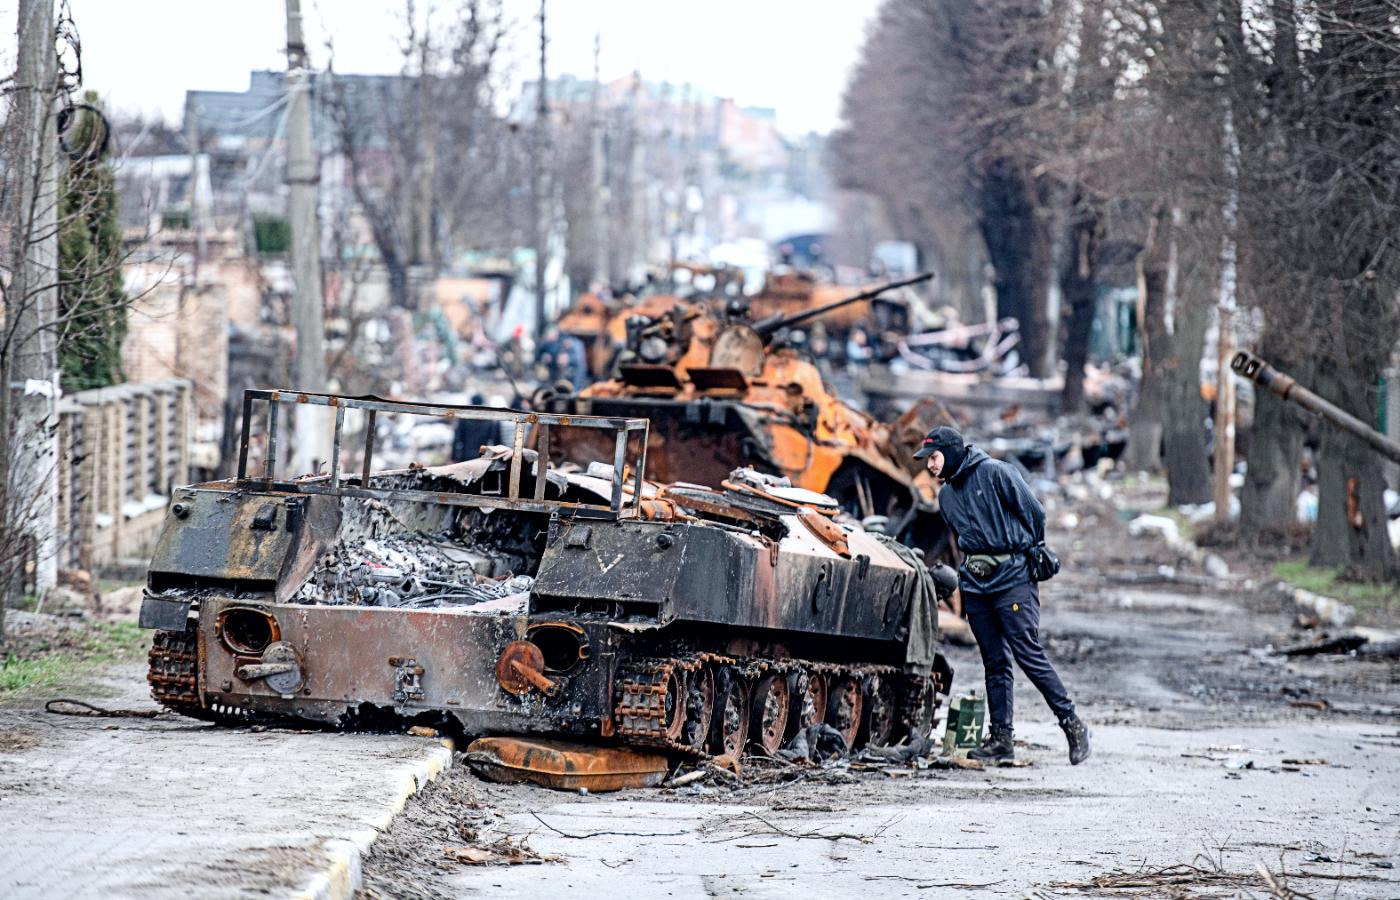 Zniszczone rosyjskie czołgi. Irpień, 6 kwietnia 2022 r.